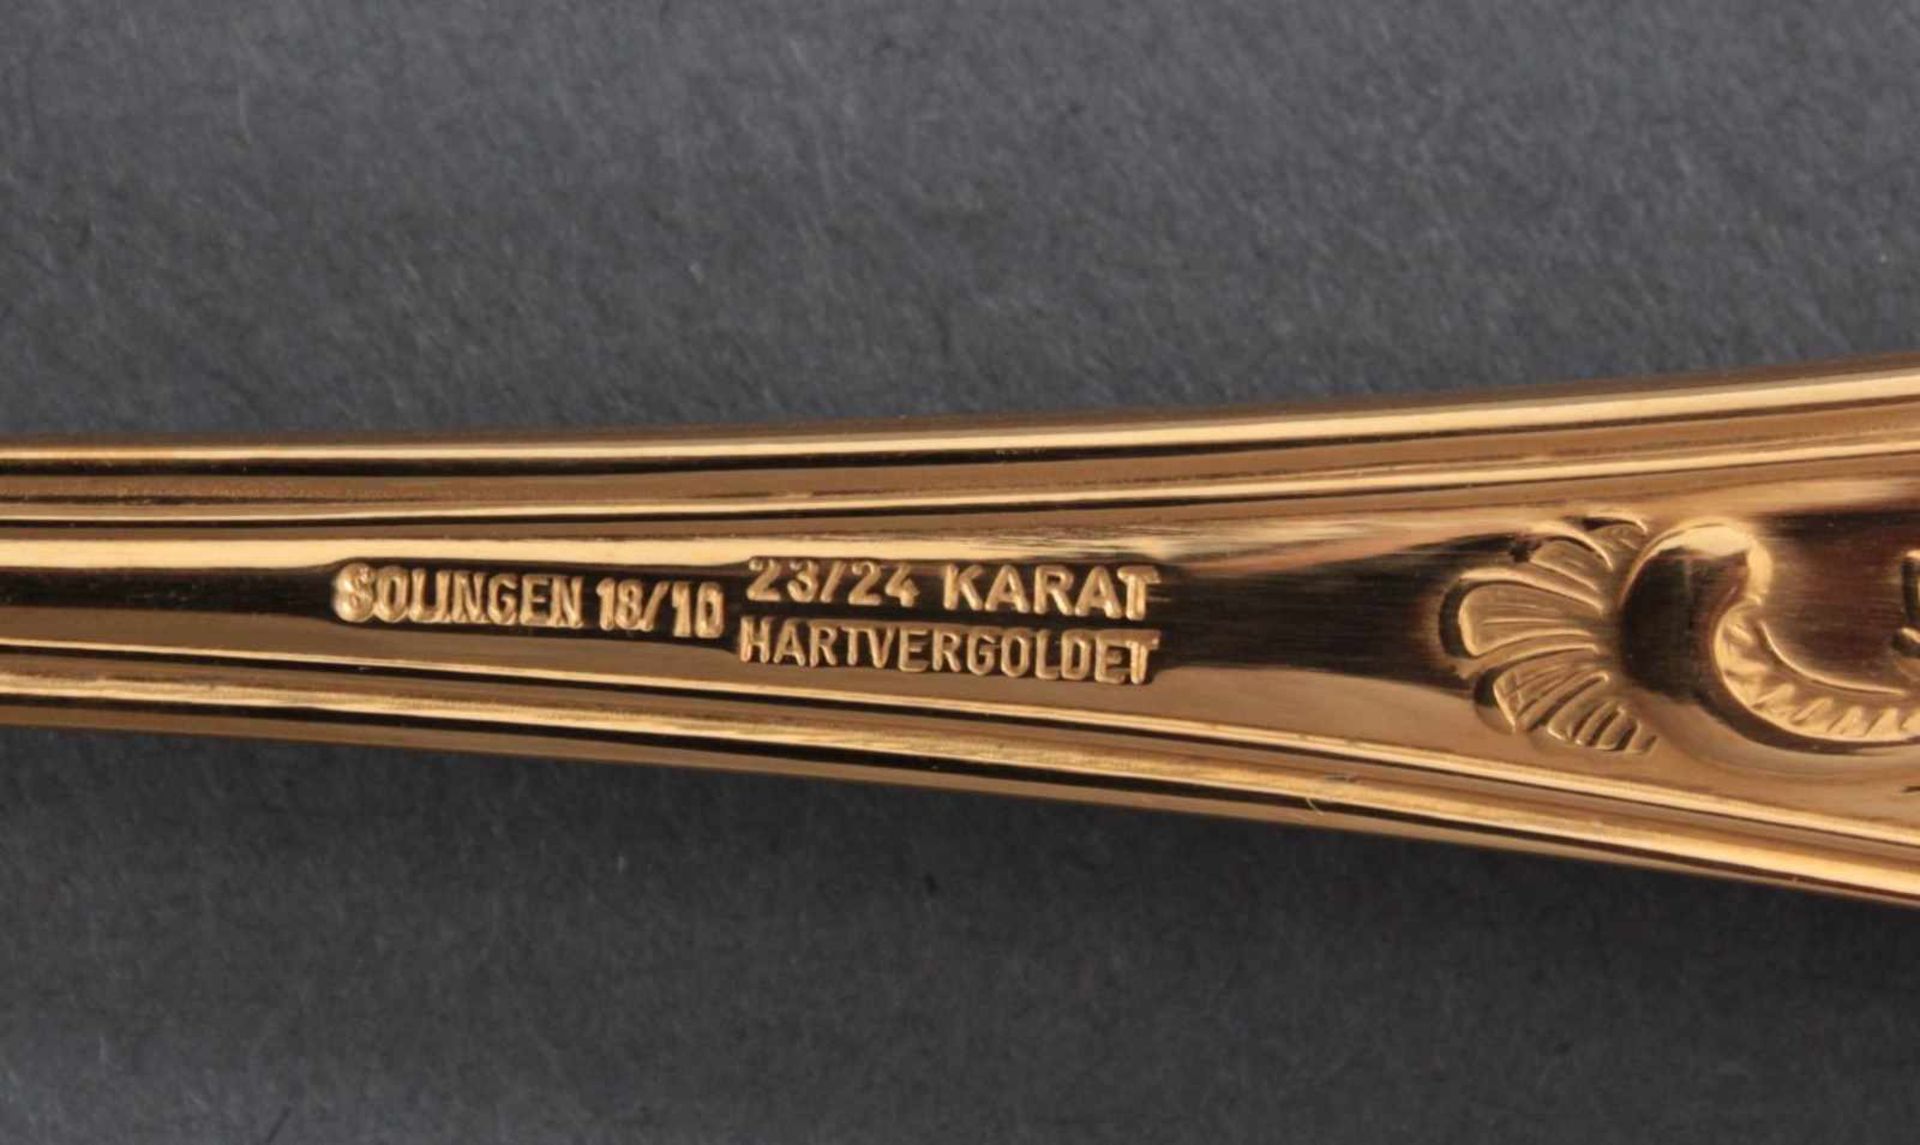 Besteckkasten Solingen, Modell Rokokko23 Karat hartvergoldet, für 12 Personen.70-teiliges Besteck im - Bild 4 aus 5